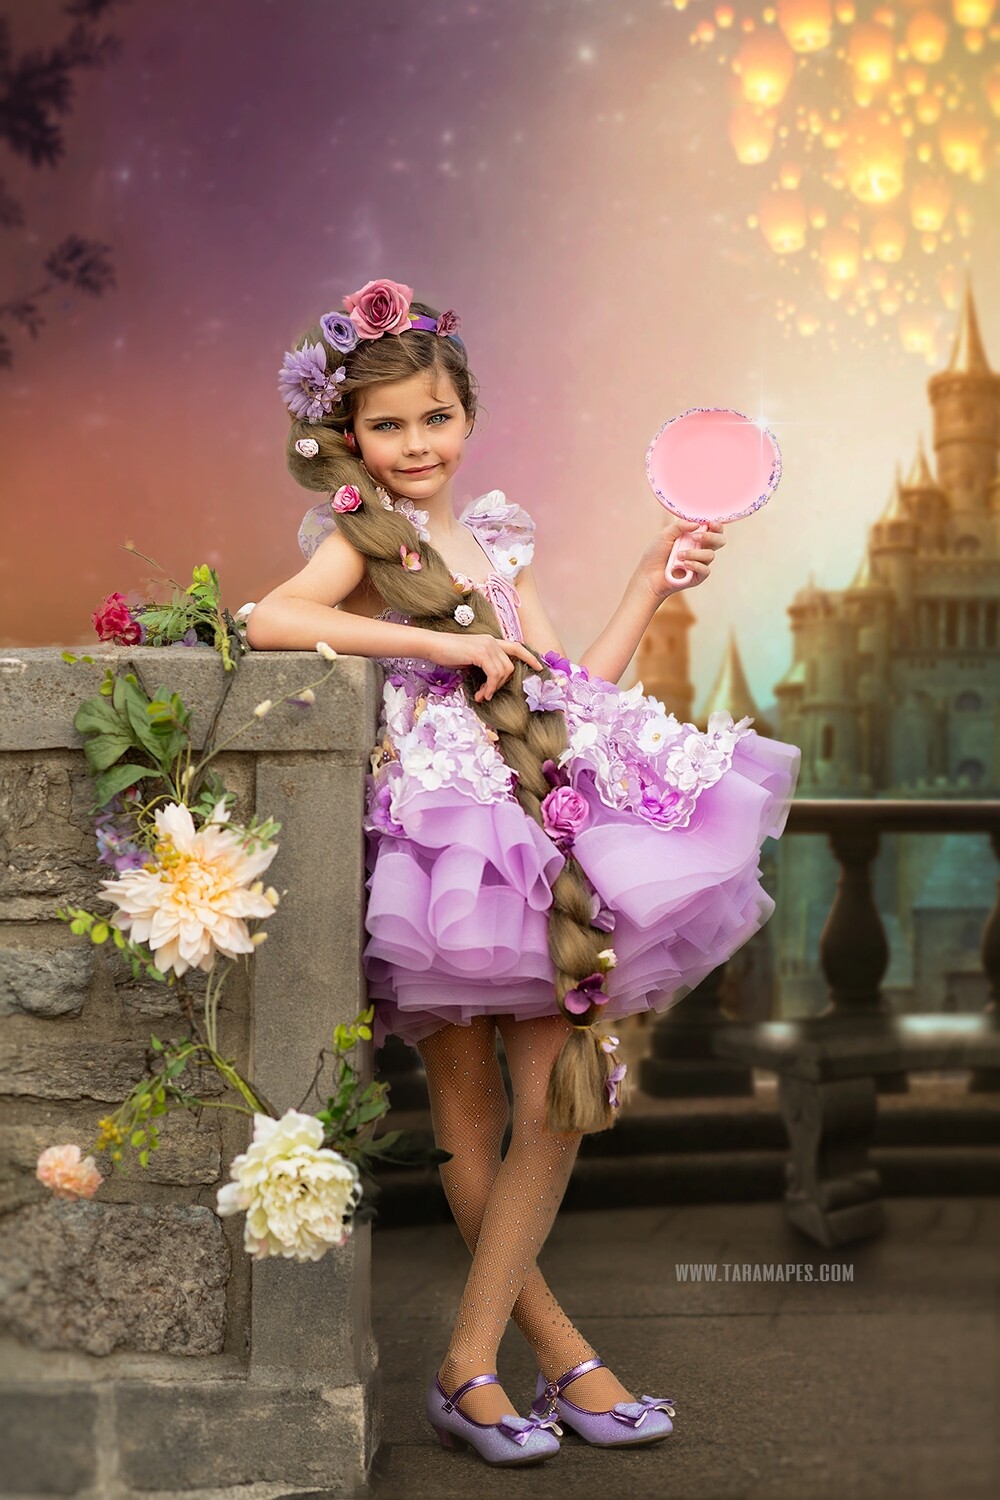 Rapunzel Castle Blurred Background for Portraits- Fairytale Princess Digital Background / Backdrop - Rapunzel Sky Lanterns